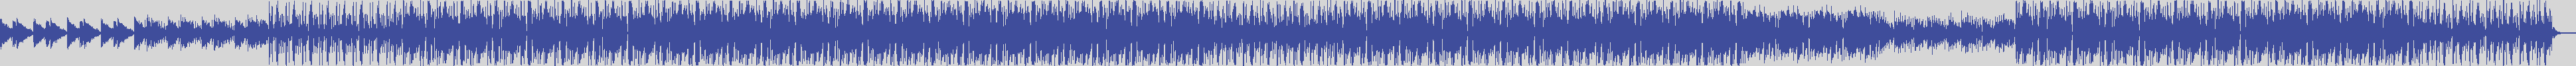 noclouds_chillout [NOC112] Pp Tone - Dep [Original Mix] audio wave form